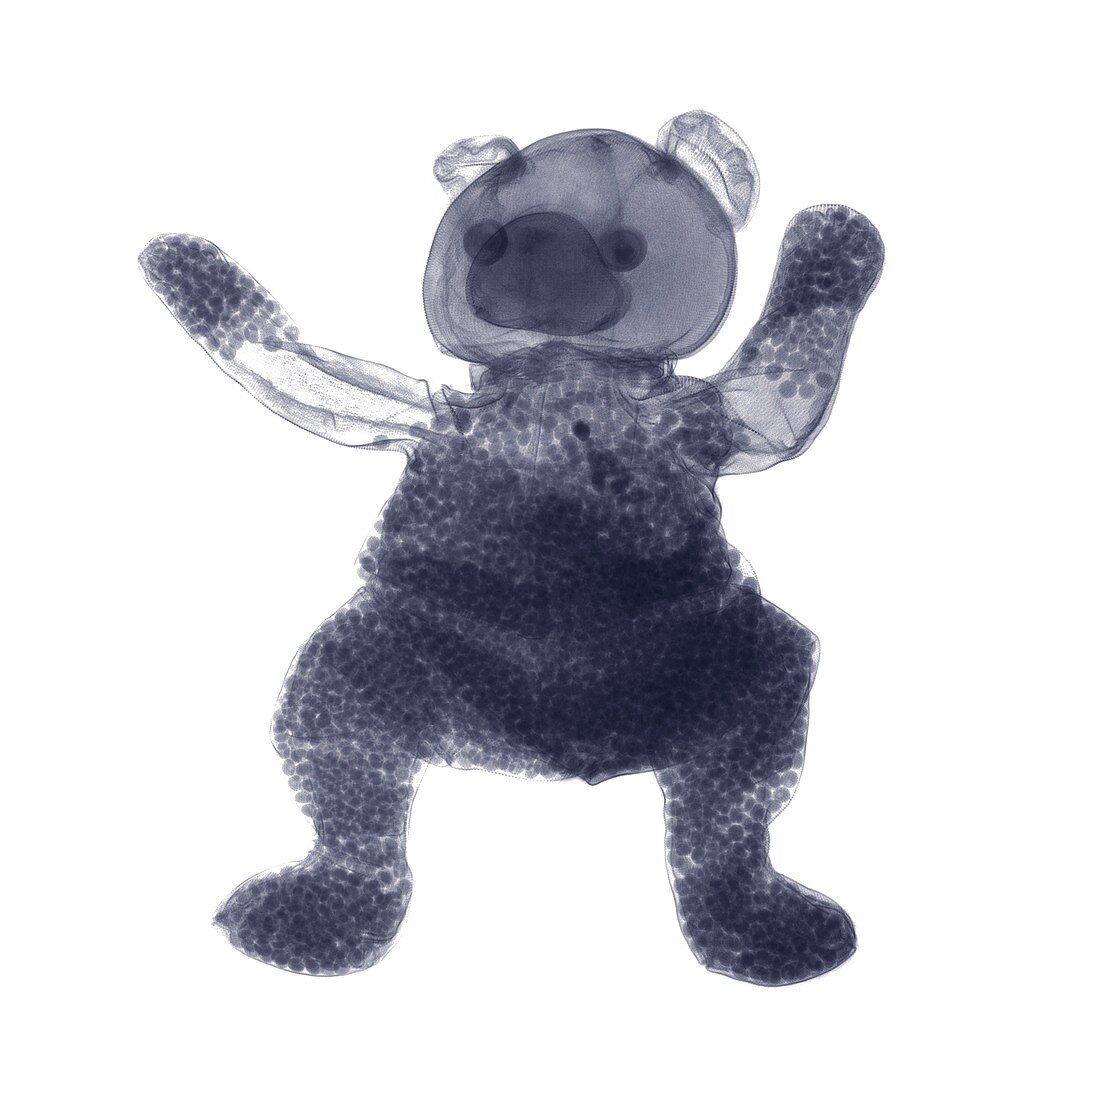 Beanie teddy bear, X-ray